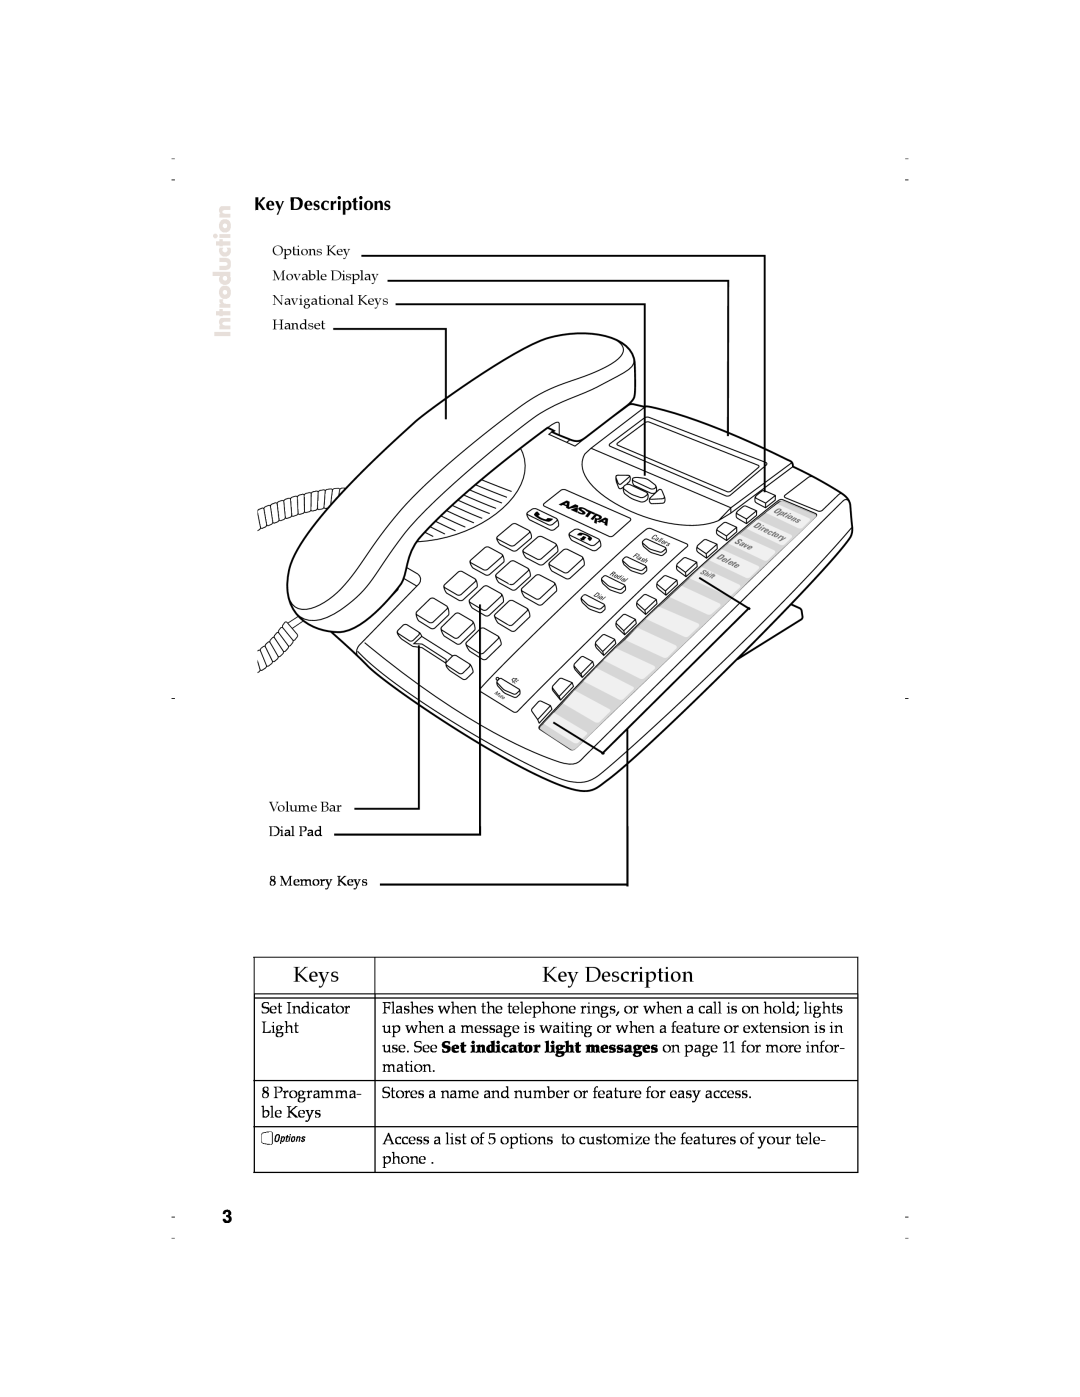 Aastra Telecom 9116 manual Keys, Introduction, Key Descriptions 